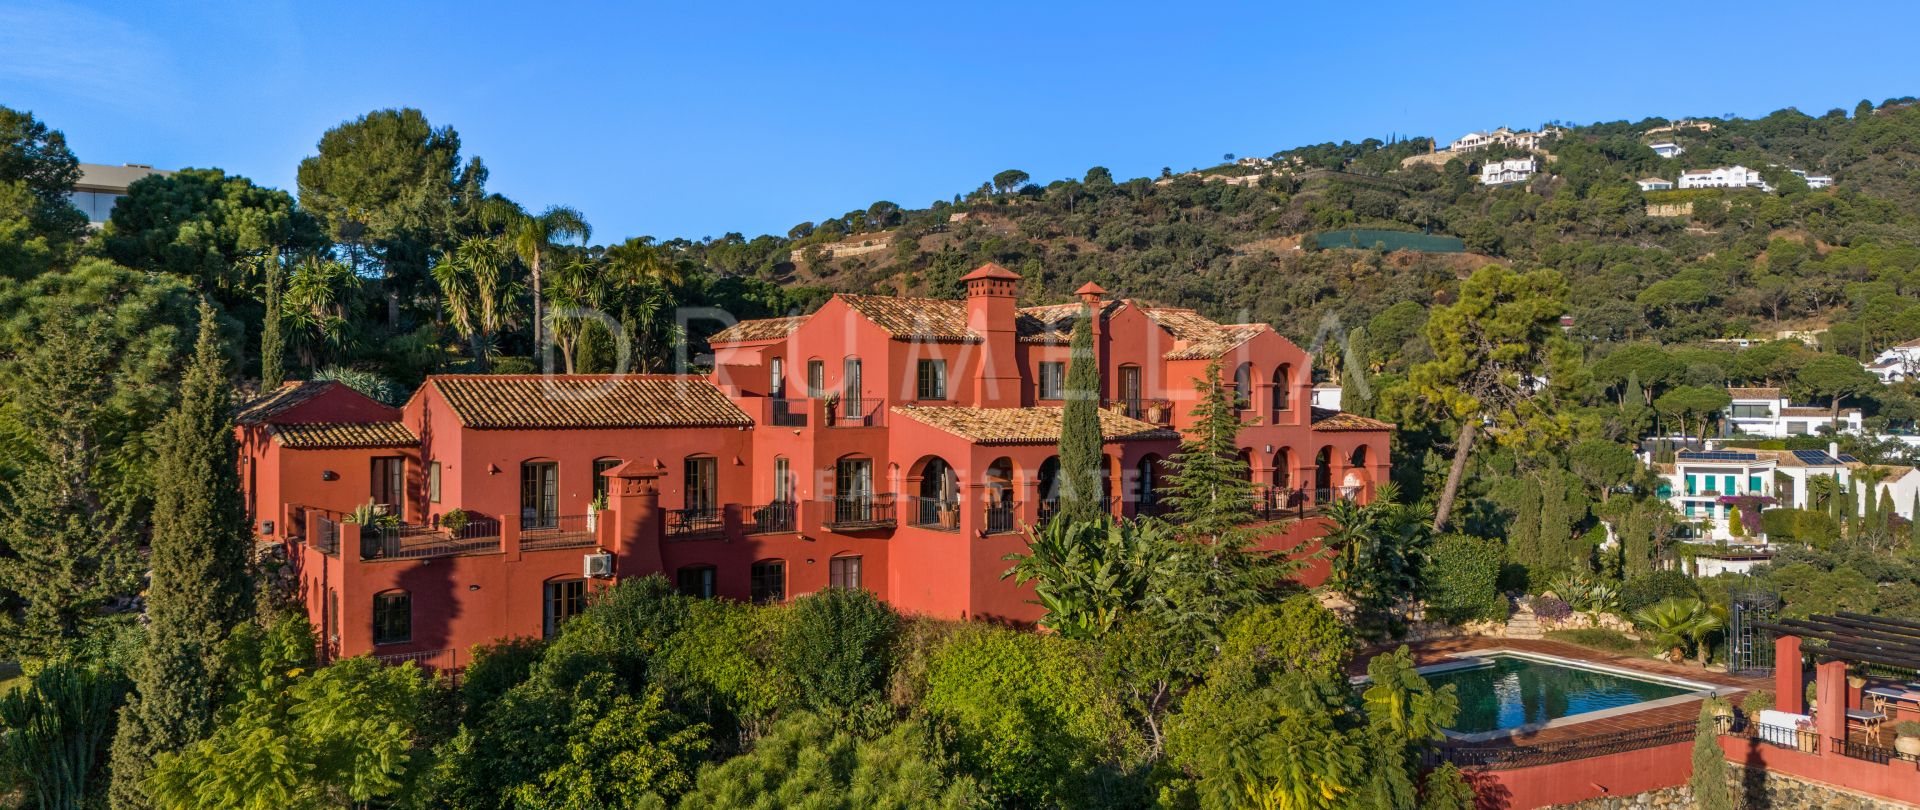 Villa i andalusisk stil til salgs i hjertet av El Madroñal, Behanavis